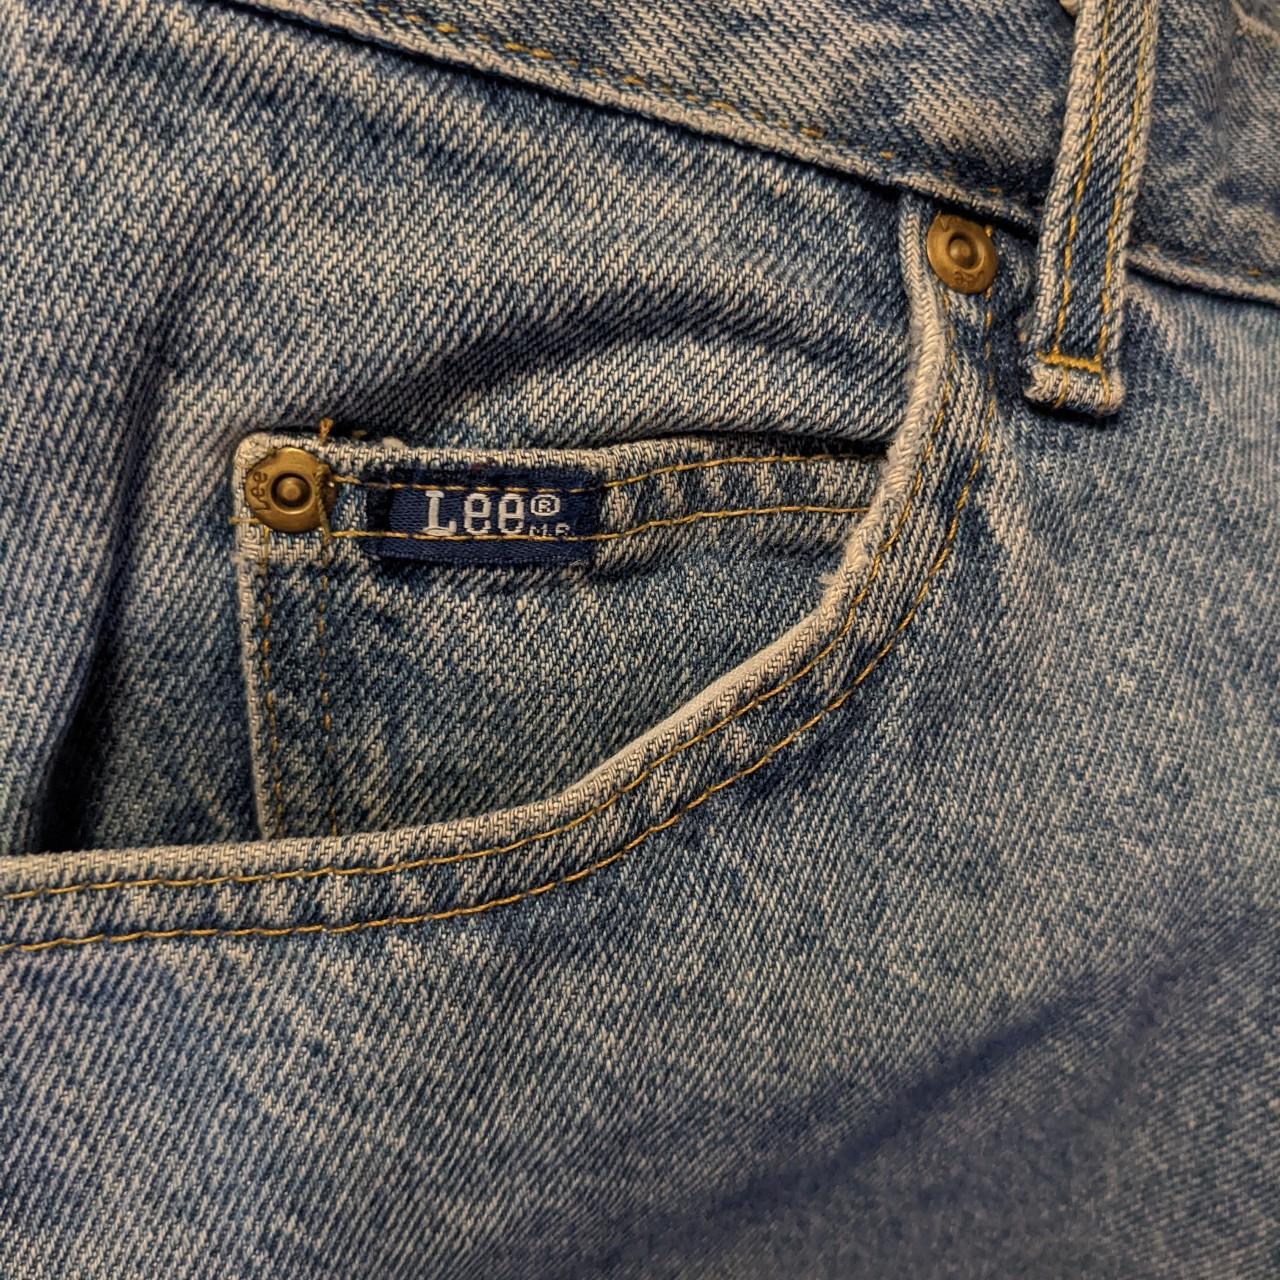 Vintage Lee jeans. Washed blue denim. No visible... - Depop